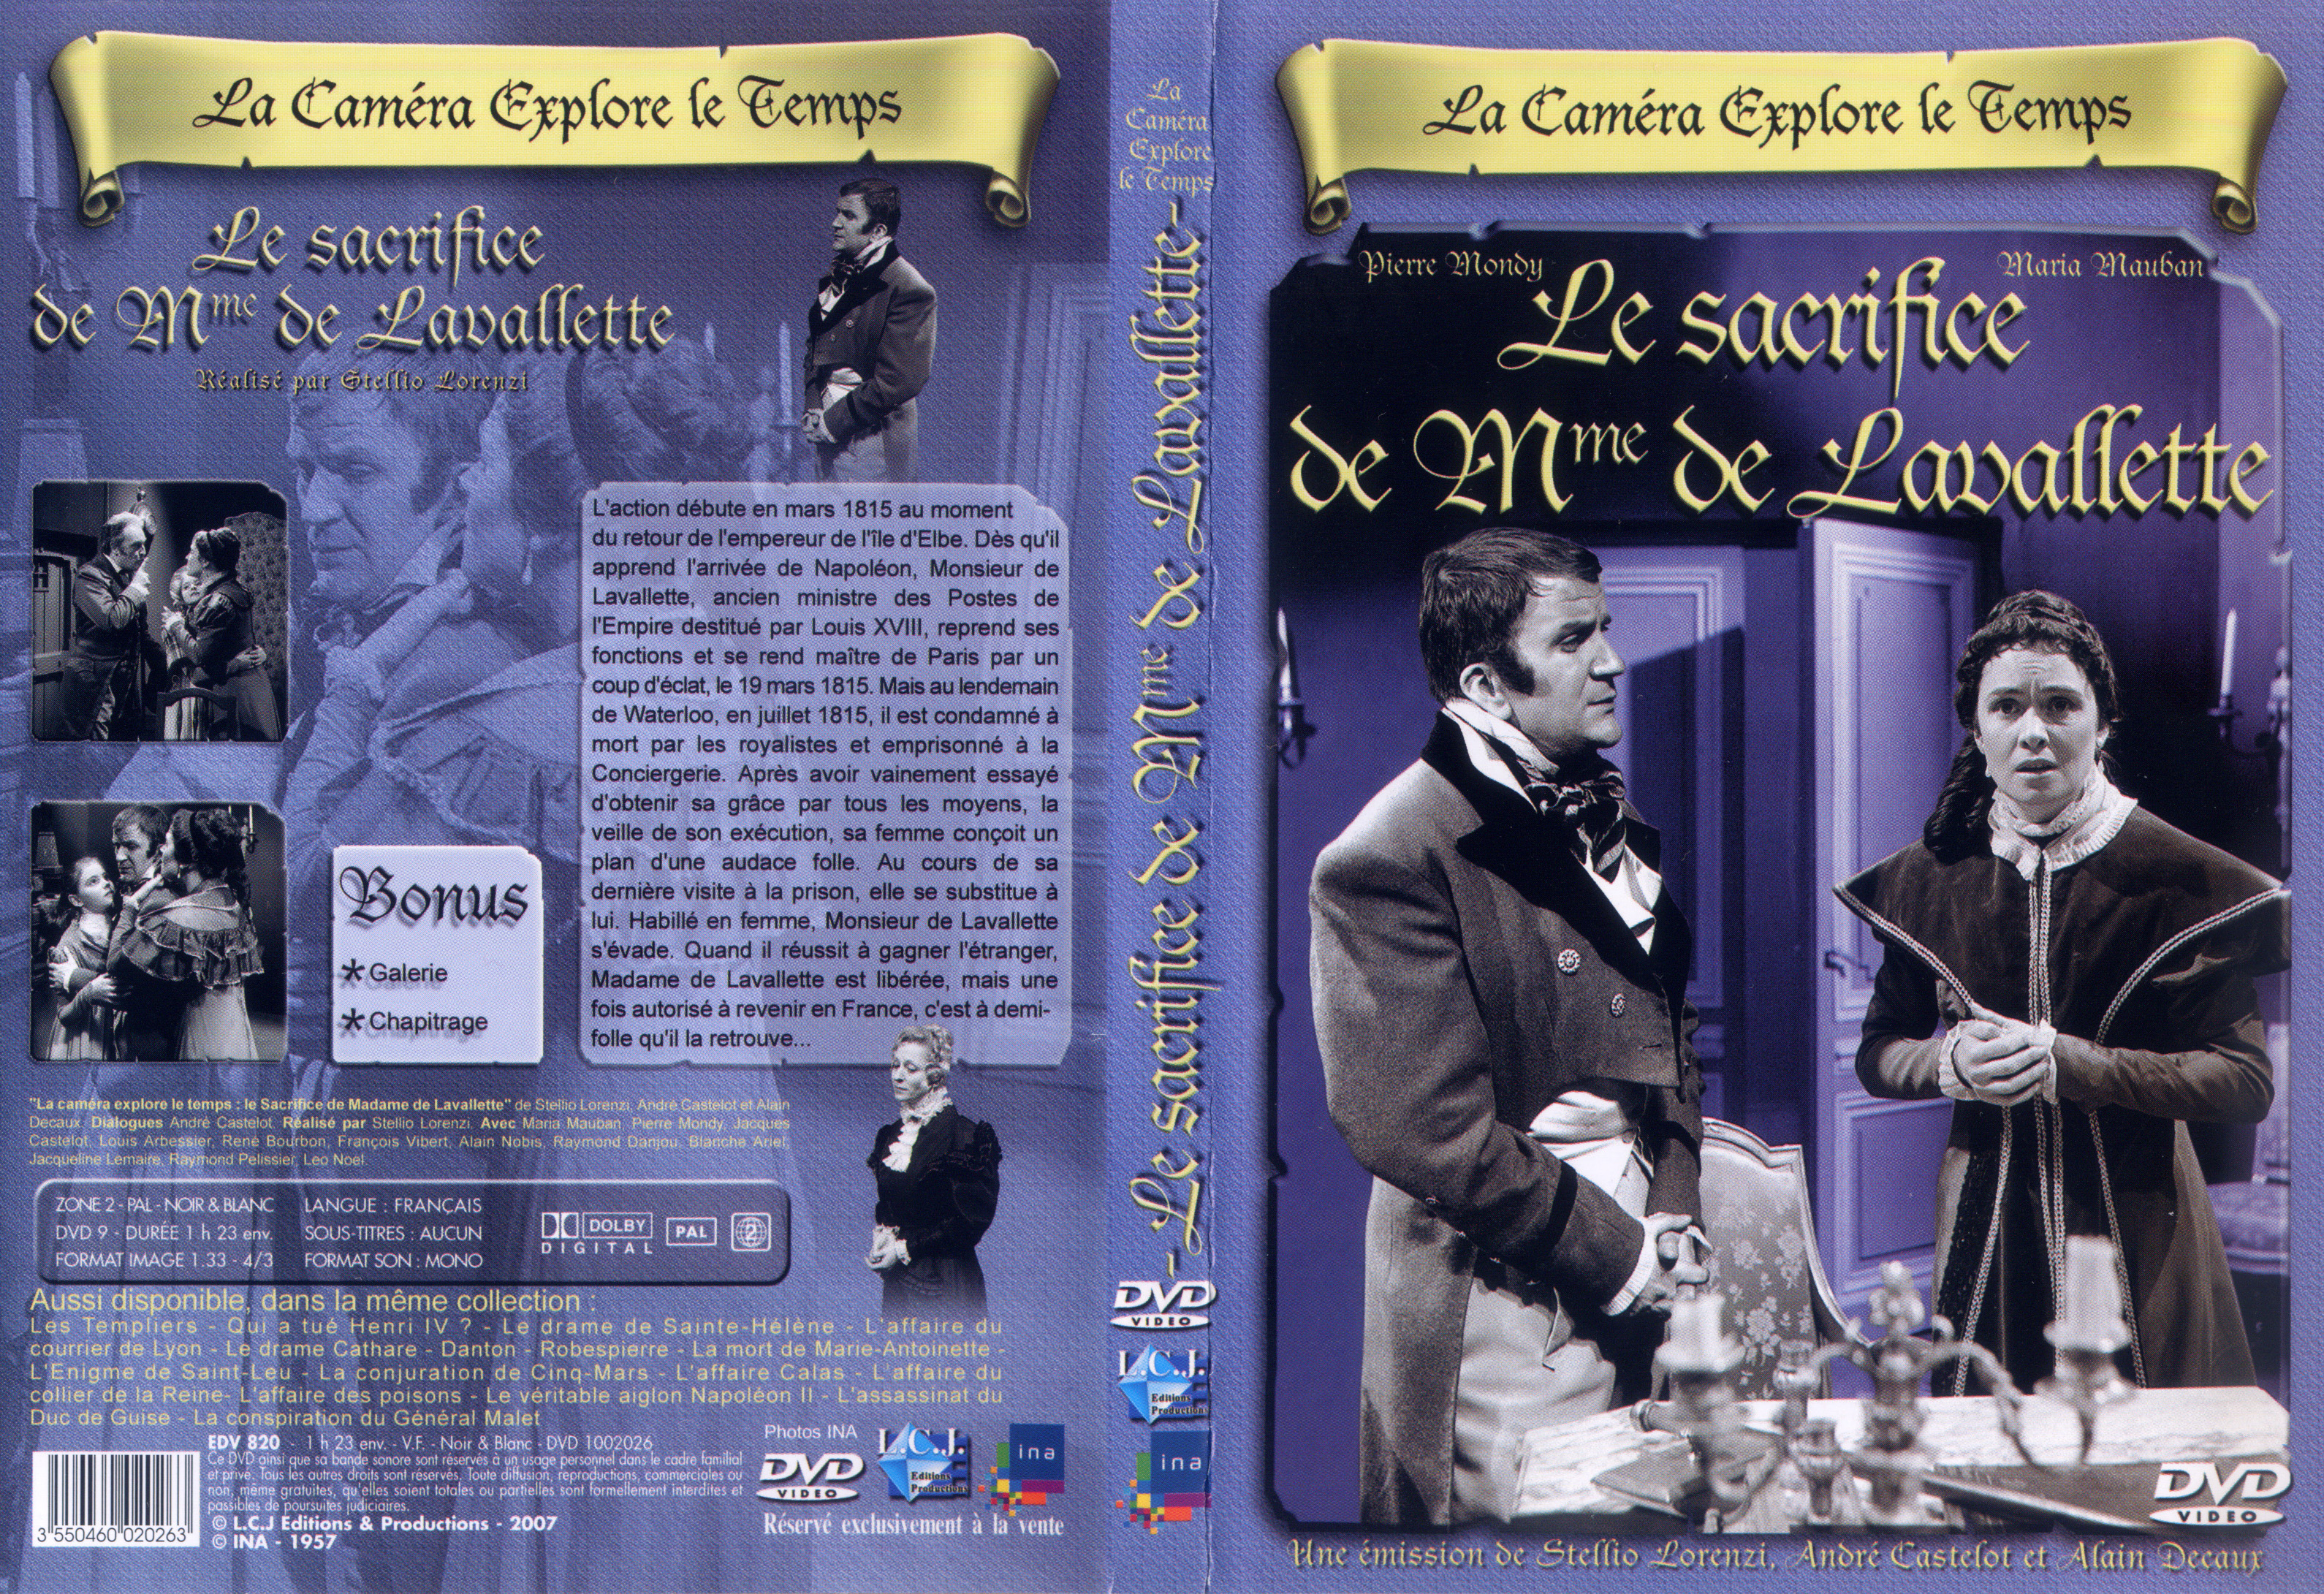 Jaquette DVD La camera explore le temps - Le sacrifice de Mme de Lavalette